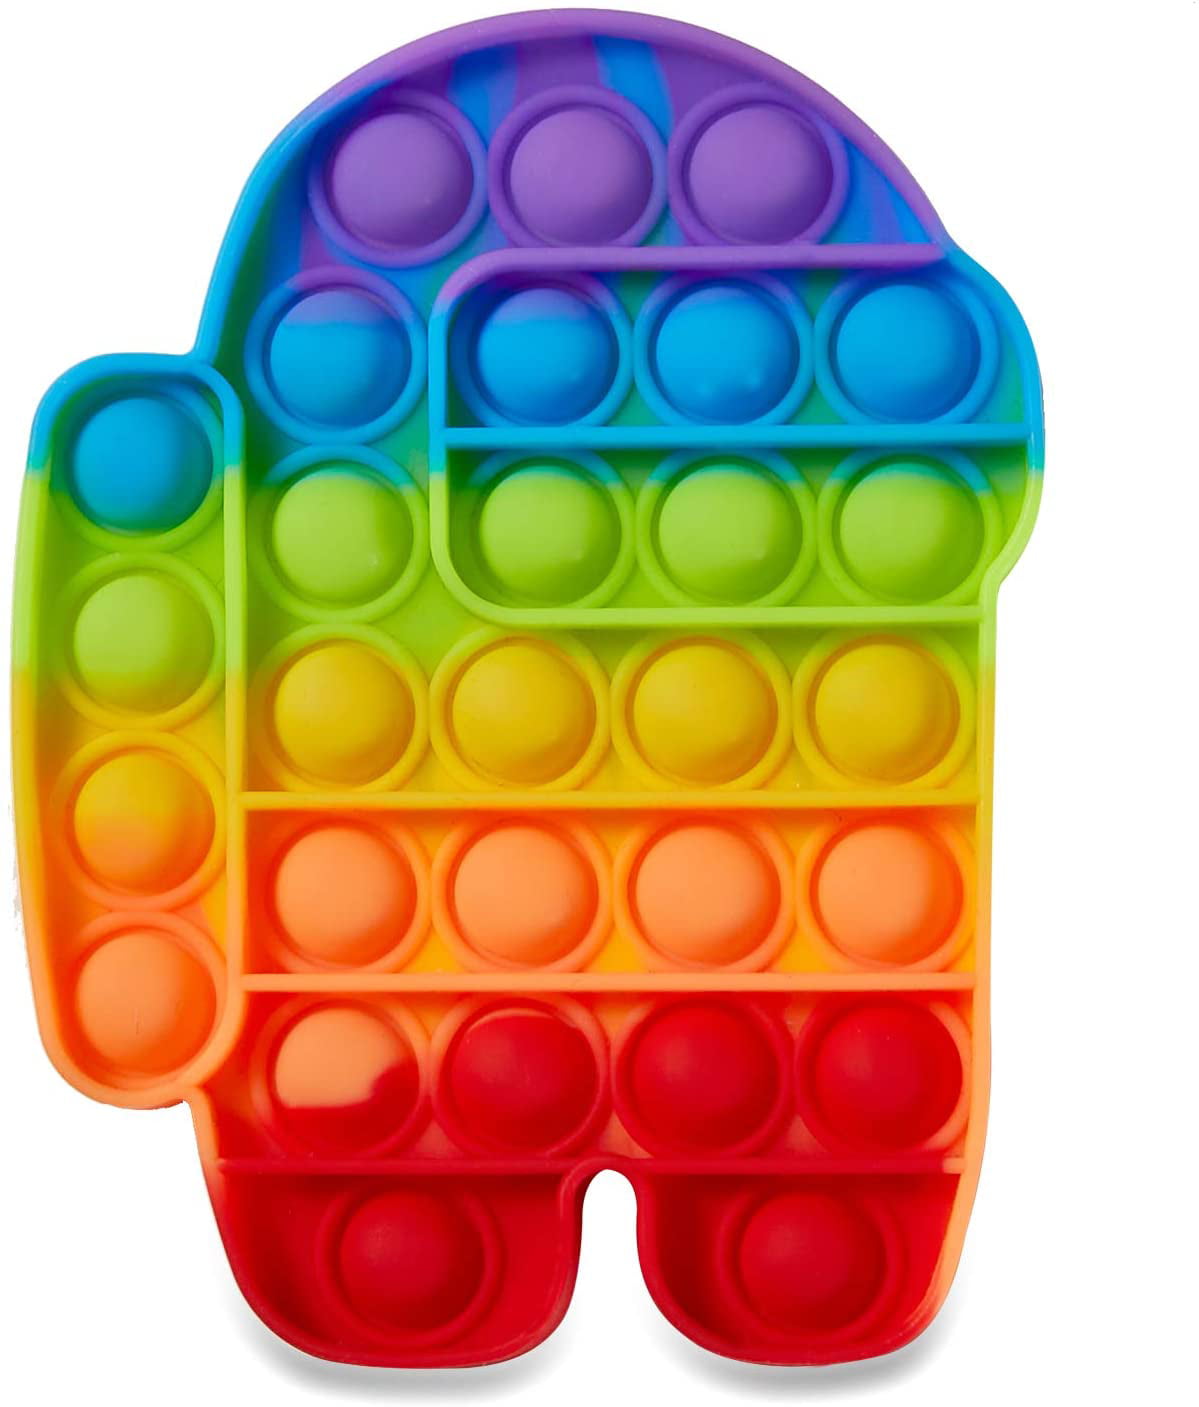 Details about   Among Us Push Bubble Fidget Sensory Toy Stress Relief Kids Toys Autism Classroom